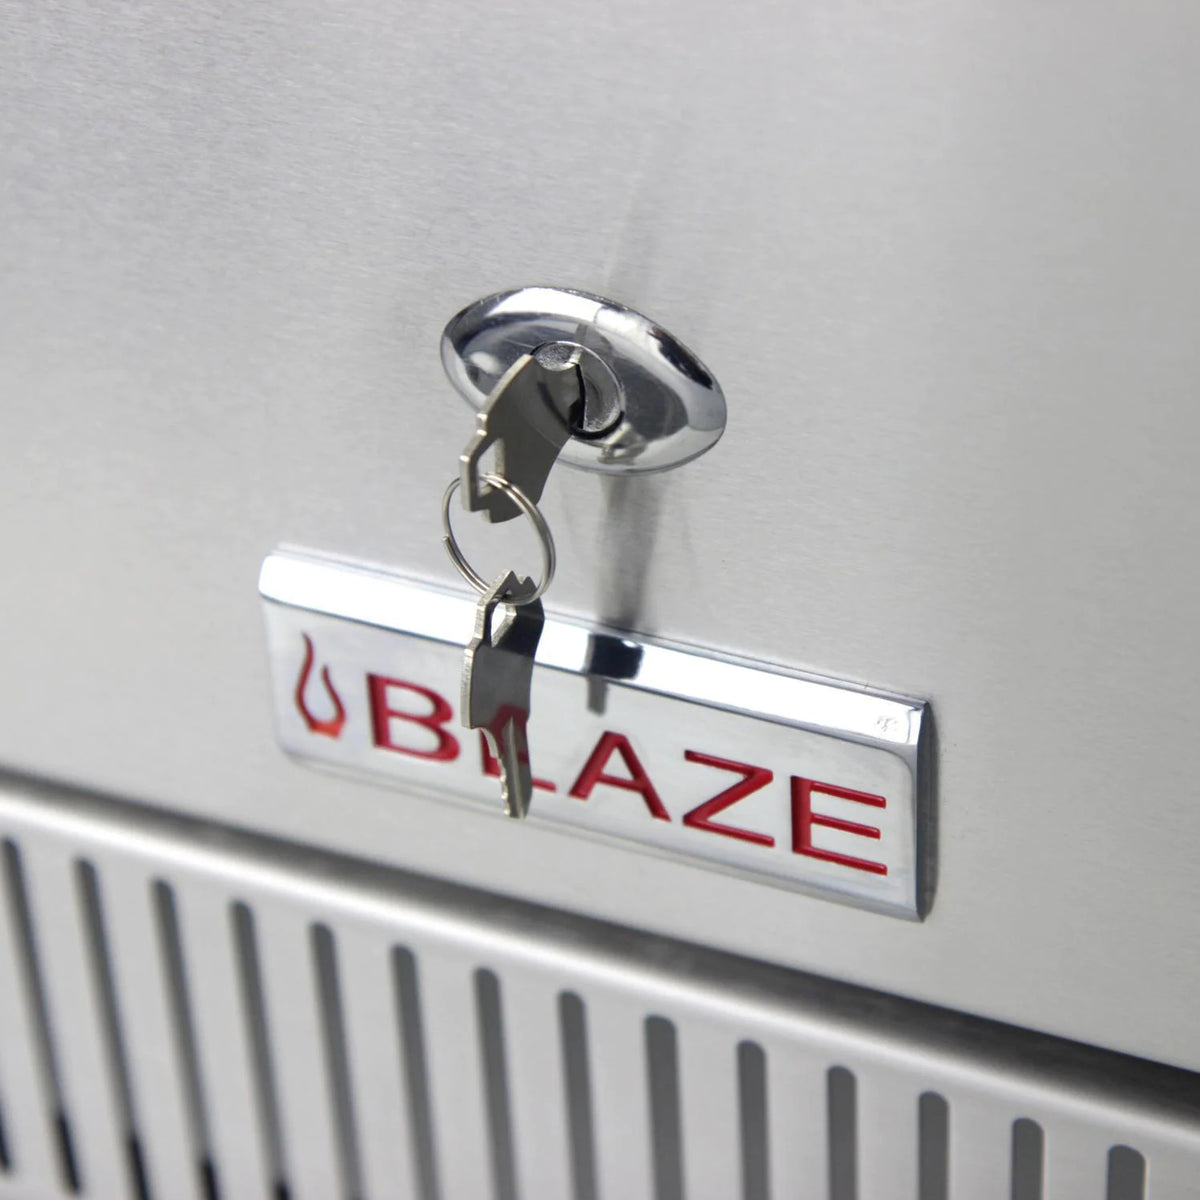 Blaze Outdoor Rated Stainless Steel Compact Refrigerator Locking Door